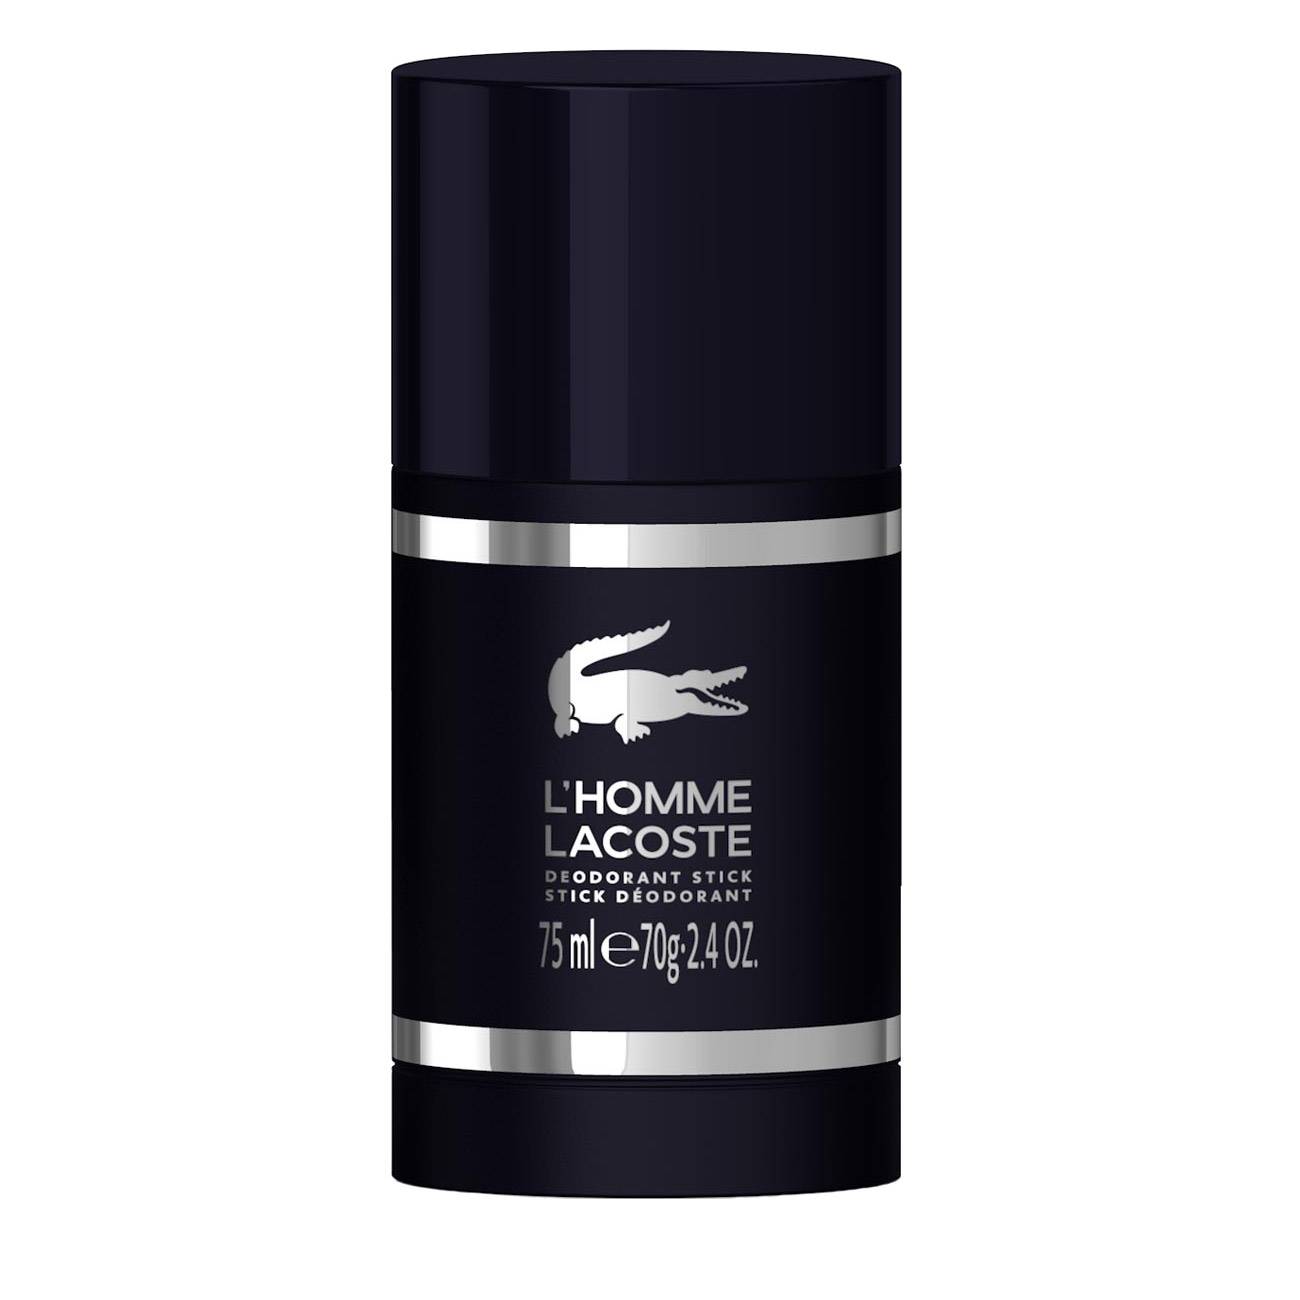 Deodorant Lacoste L’HOMME DEODORANT STICK 75ml cu comanda online